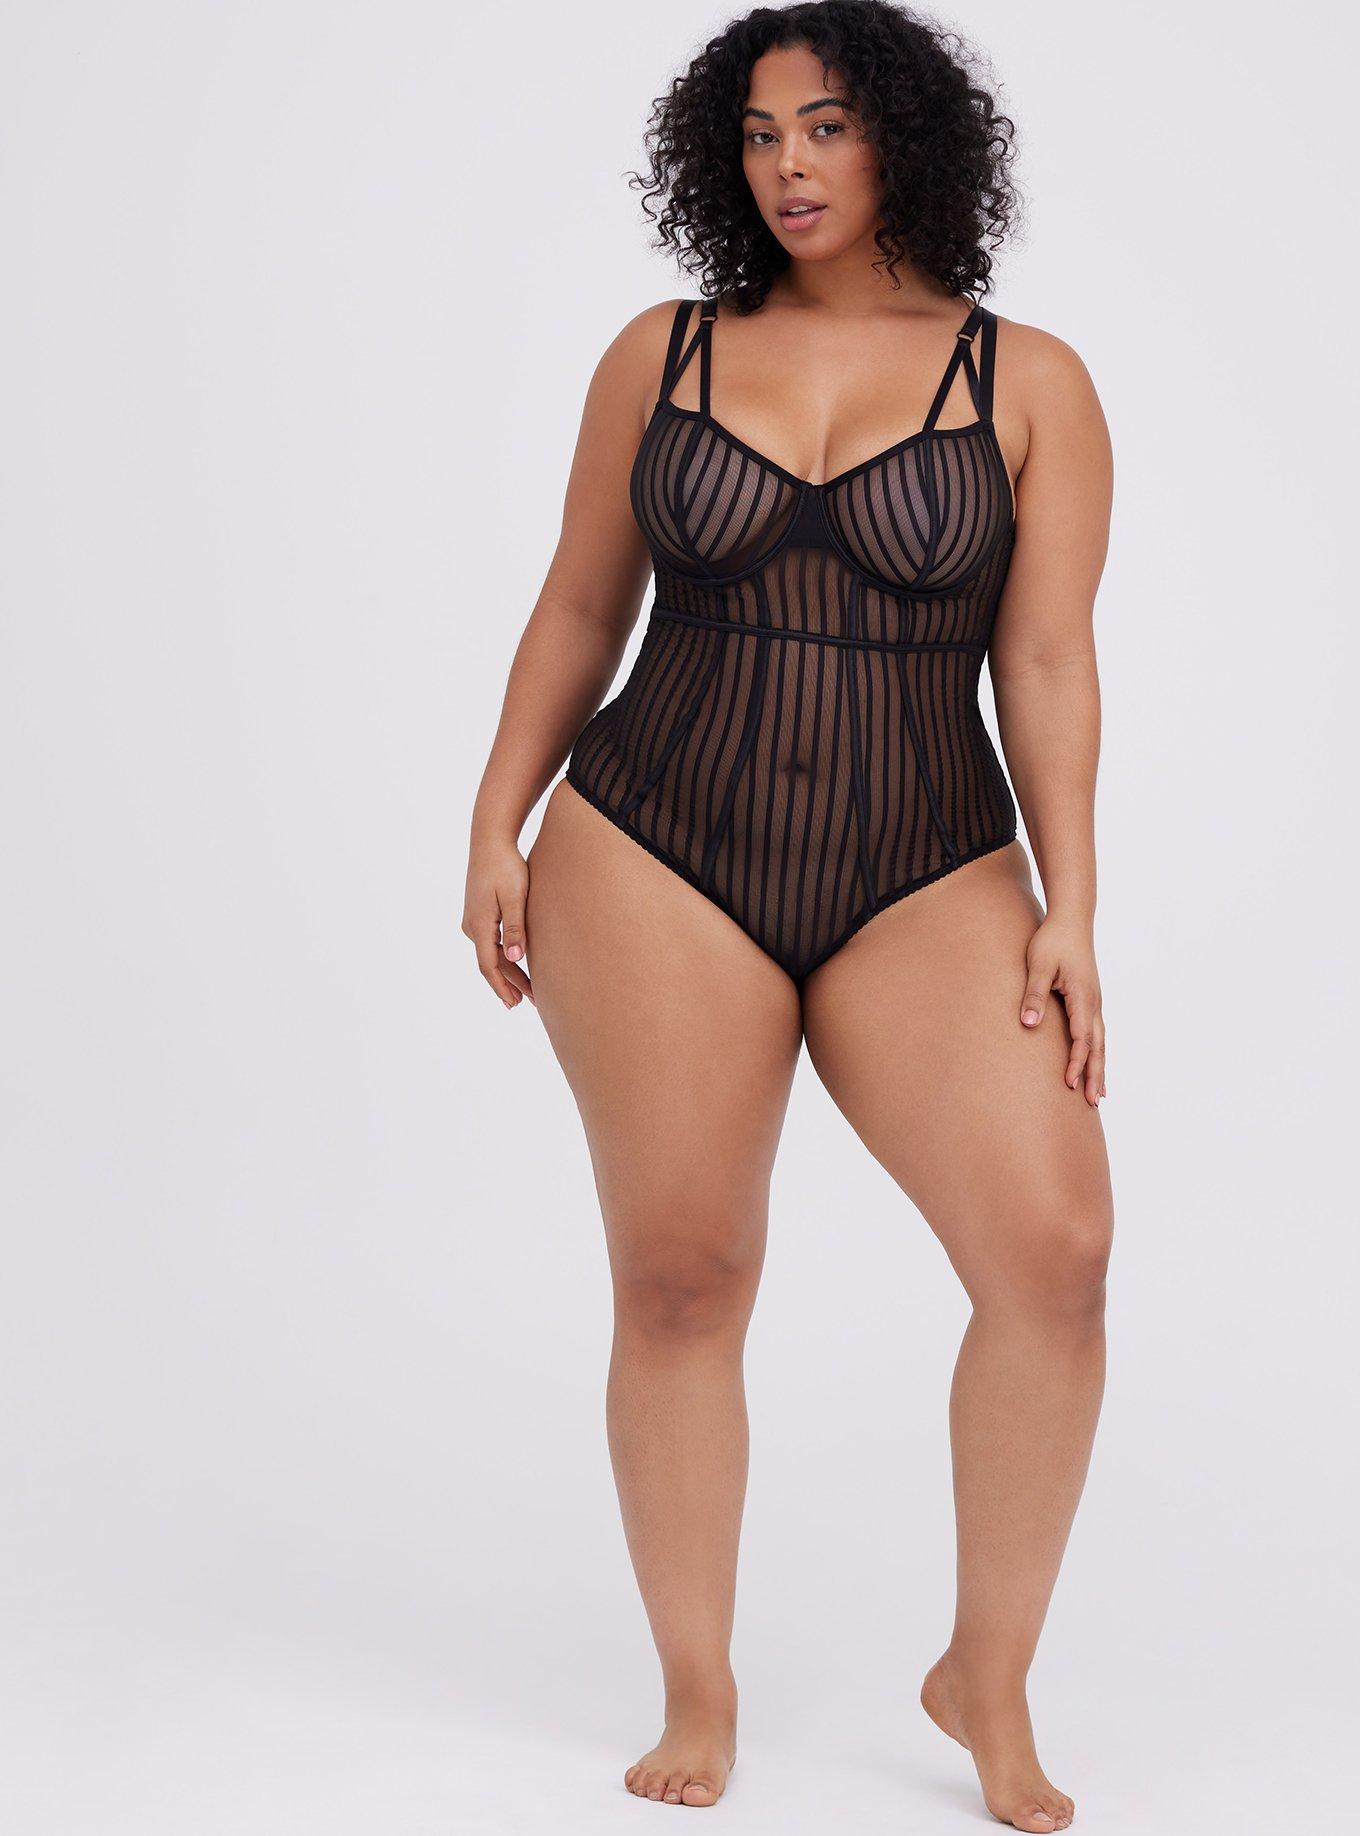 Womens Torrid Black Overt Strappy Mesh Bodysuit Size 0 12 Large